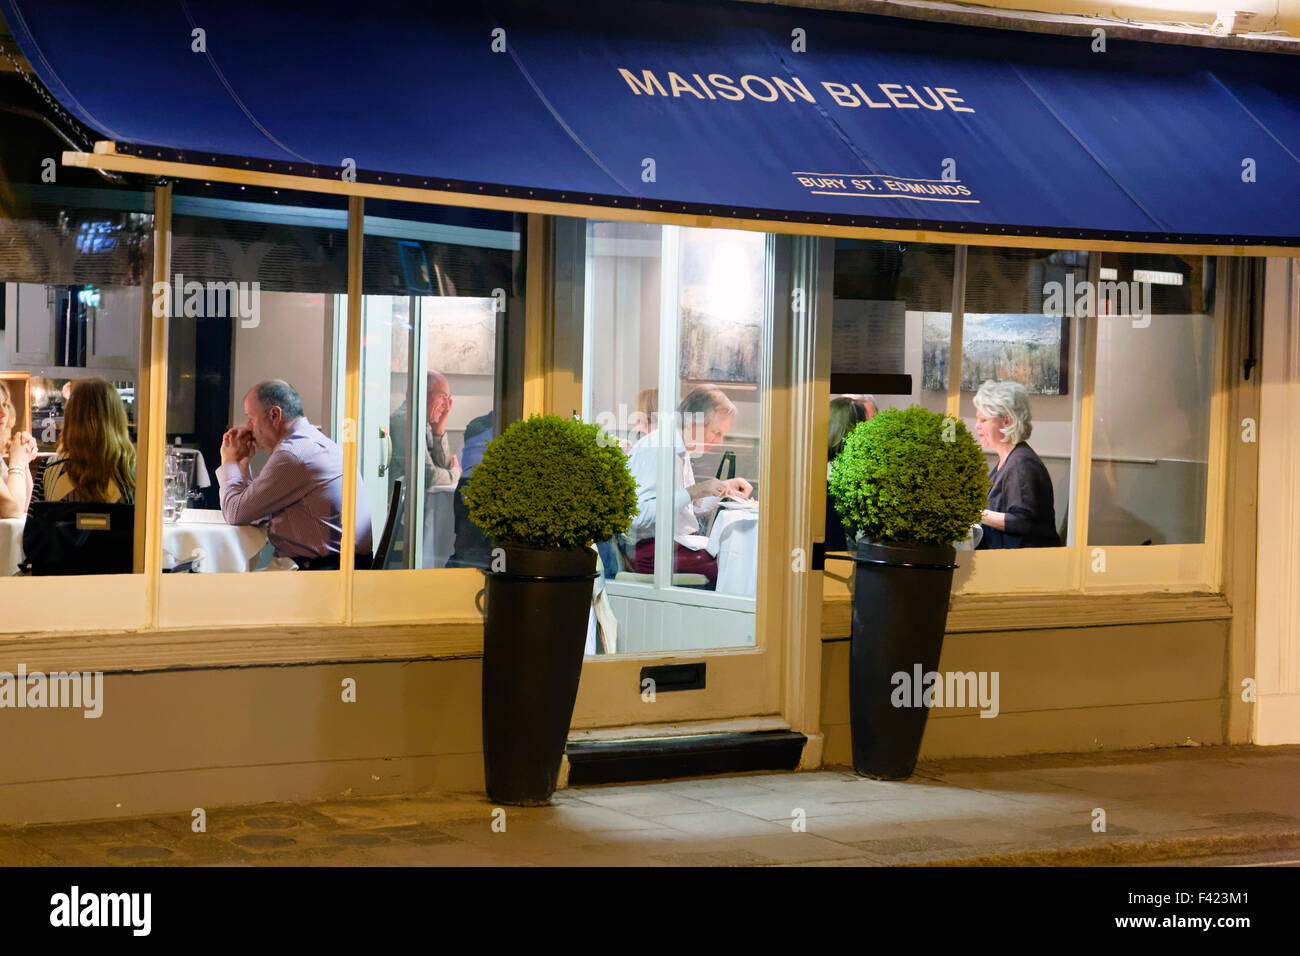 La Maison Bleue French restaurant in Bury St Edmunds, UK Stock Photo